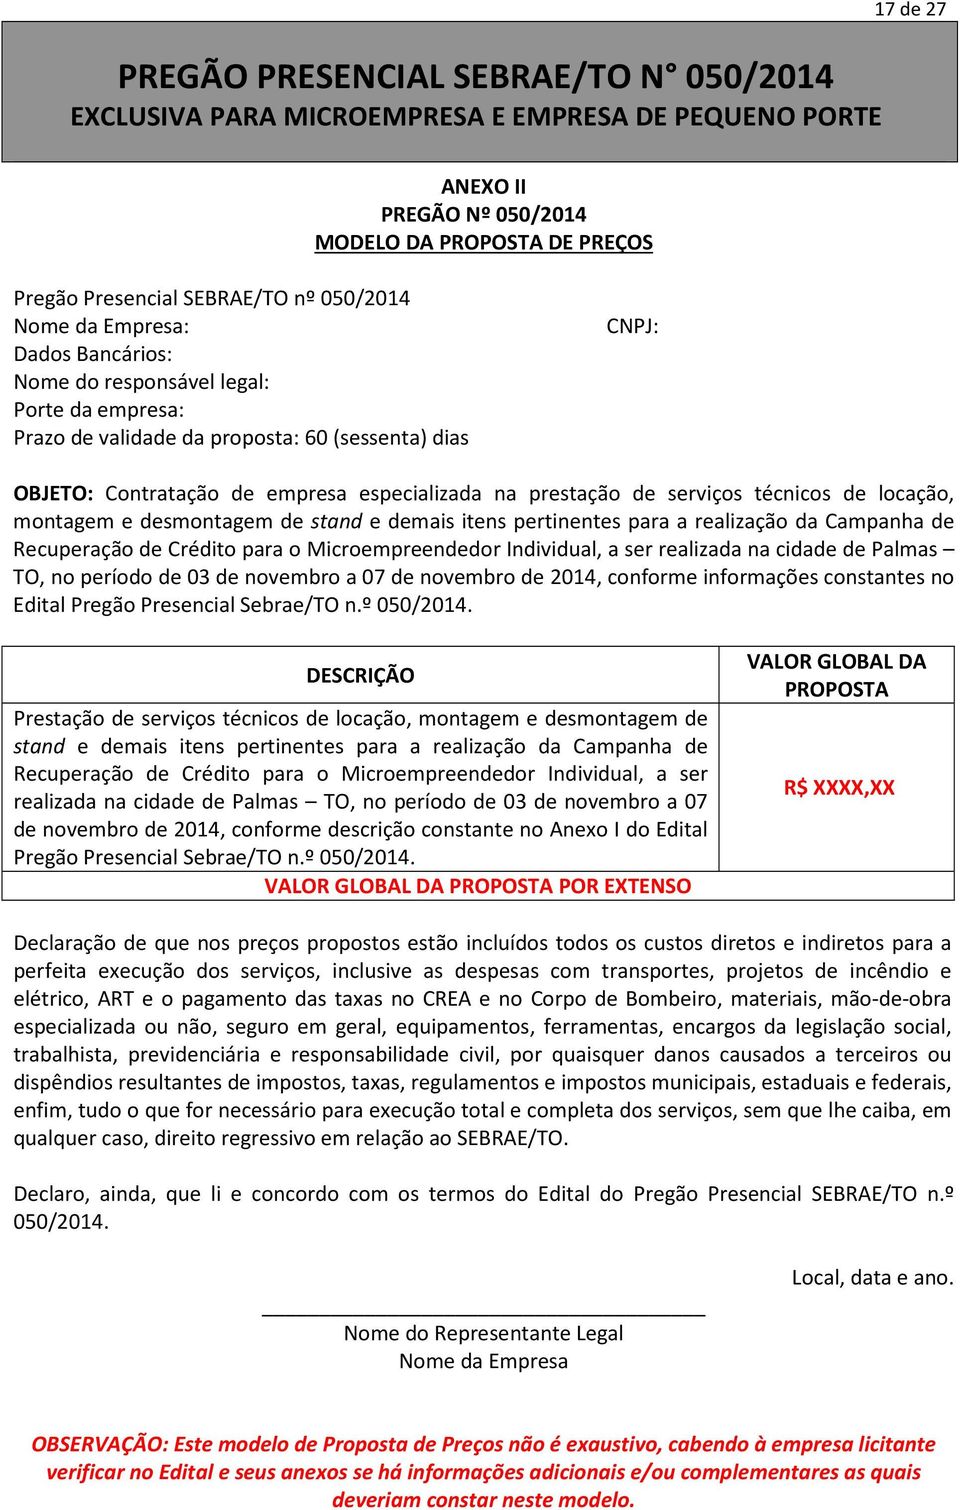 para a realização da Campanha de Recuperação de Crédito para o Microempreendedor Individual, a ser realizada na cidade de Palmas TO, no período de 03 de novembro a 07 de novembro de 2014, conforme